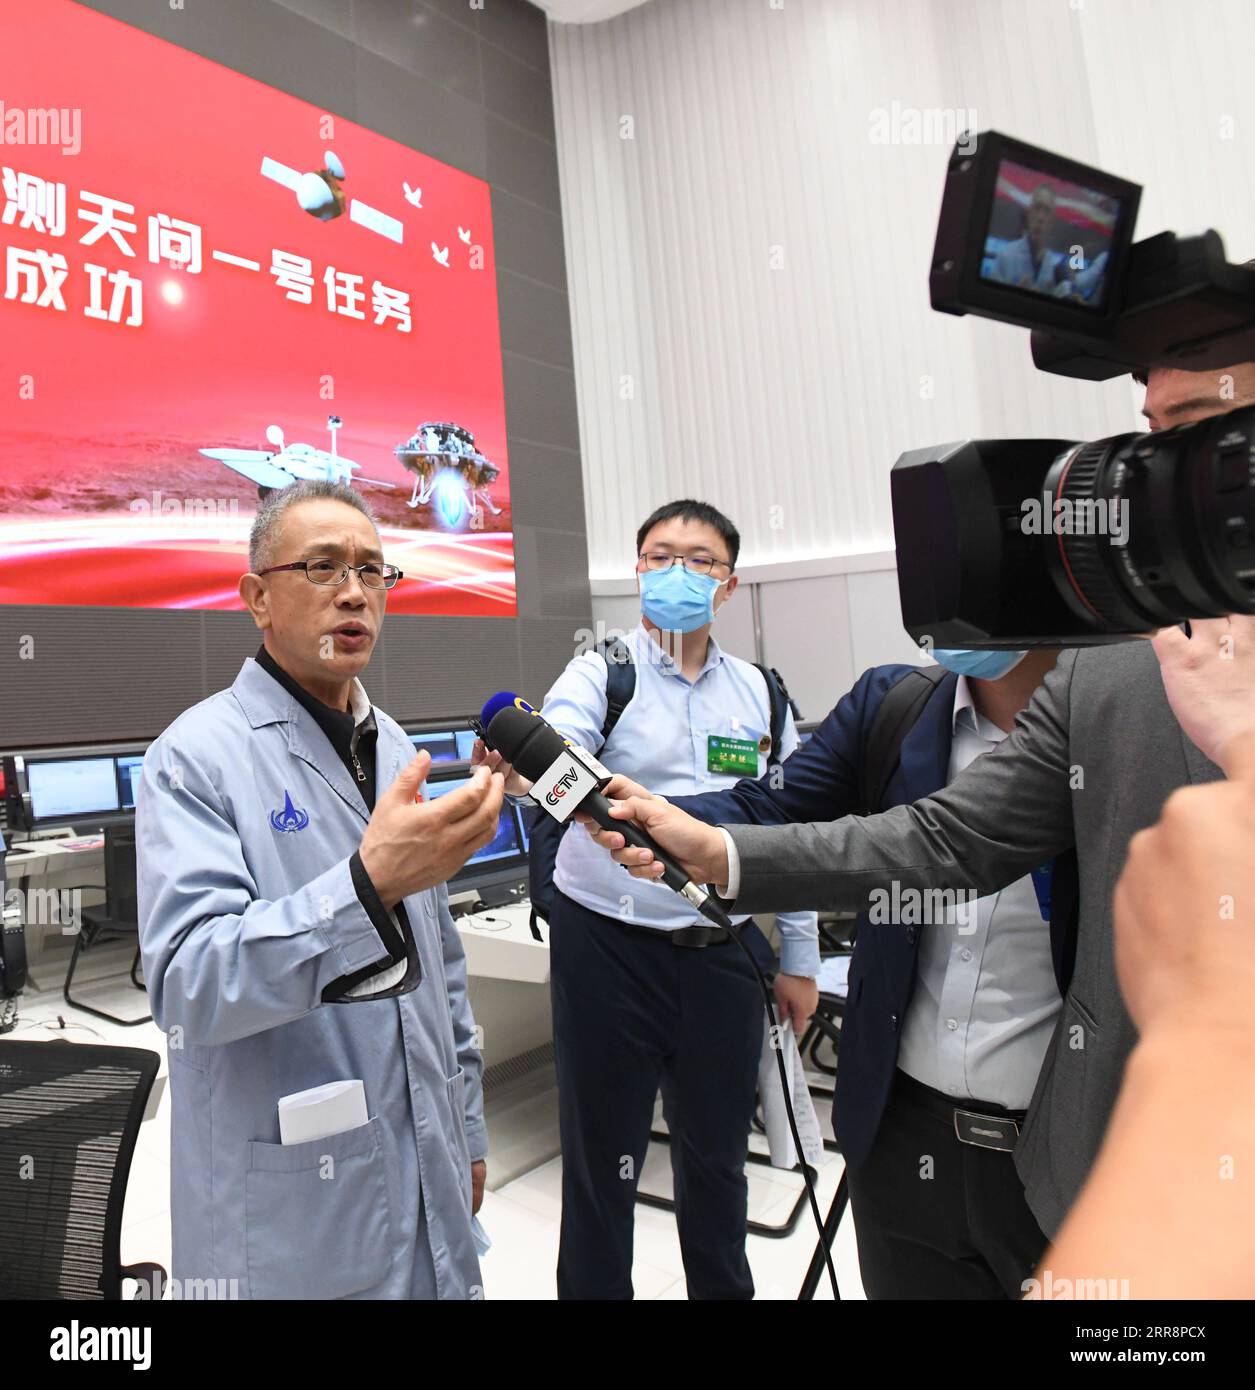 210515 -- PEKING, 15. Mai 2021 -- Zhang Rongqiao, Chefdesigner der ersten Mars-Explorationsmission Chinas, spricht in einem Interview in Peking, der Hauptstadt Chinas, am 15. Mai 2021. Der Lander mit Chinas erstem Mars-rover ist auf dem roten Planeten gelandet, bestätigte die chinesische nationale Raumfahrtbehörde CNSA am Samstagmorgen. Es ist das erste Mal, dass China eine Sonde auf einem anderen Planeten als der Erde landet. EyesonSci CHINA-BEIJING-TIANWEN-1 PROBE-MARS-LANDING CN RaoxAimin PUBLICATIONxNOTxINxCHN Stockfoto